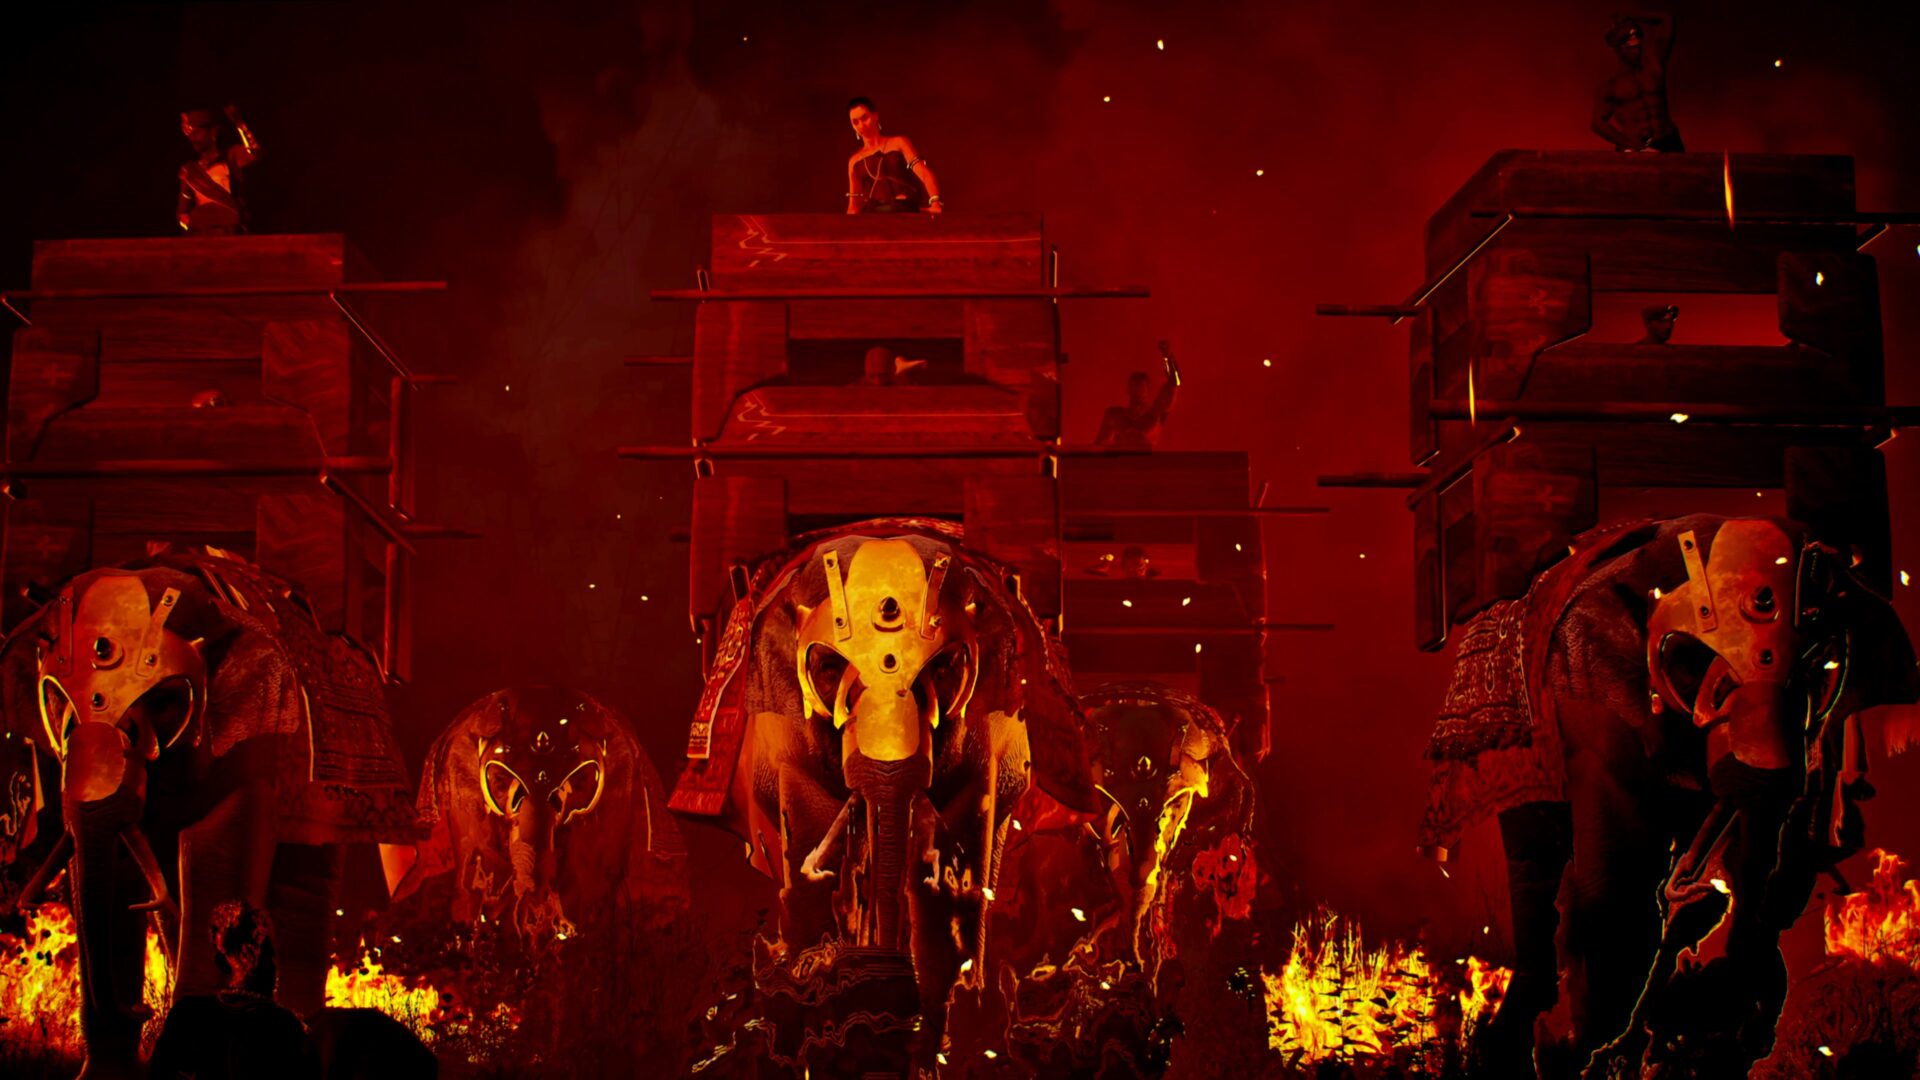 Elephants in a fiery scene